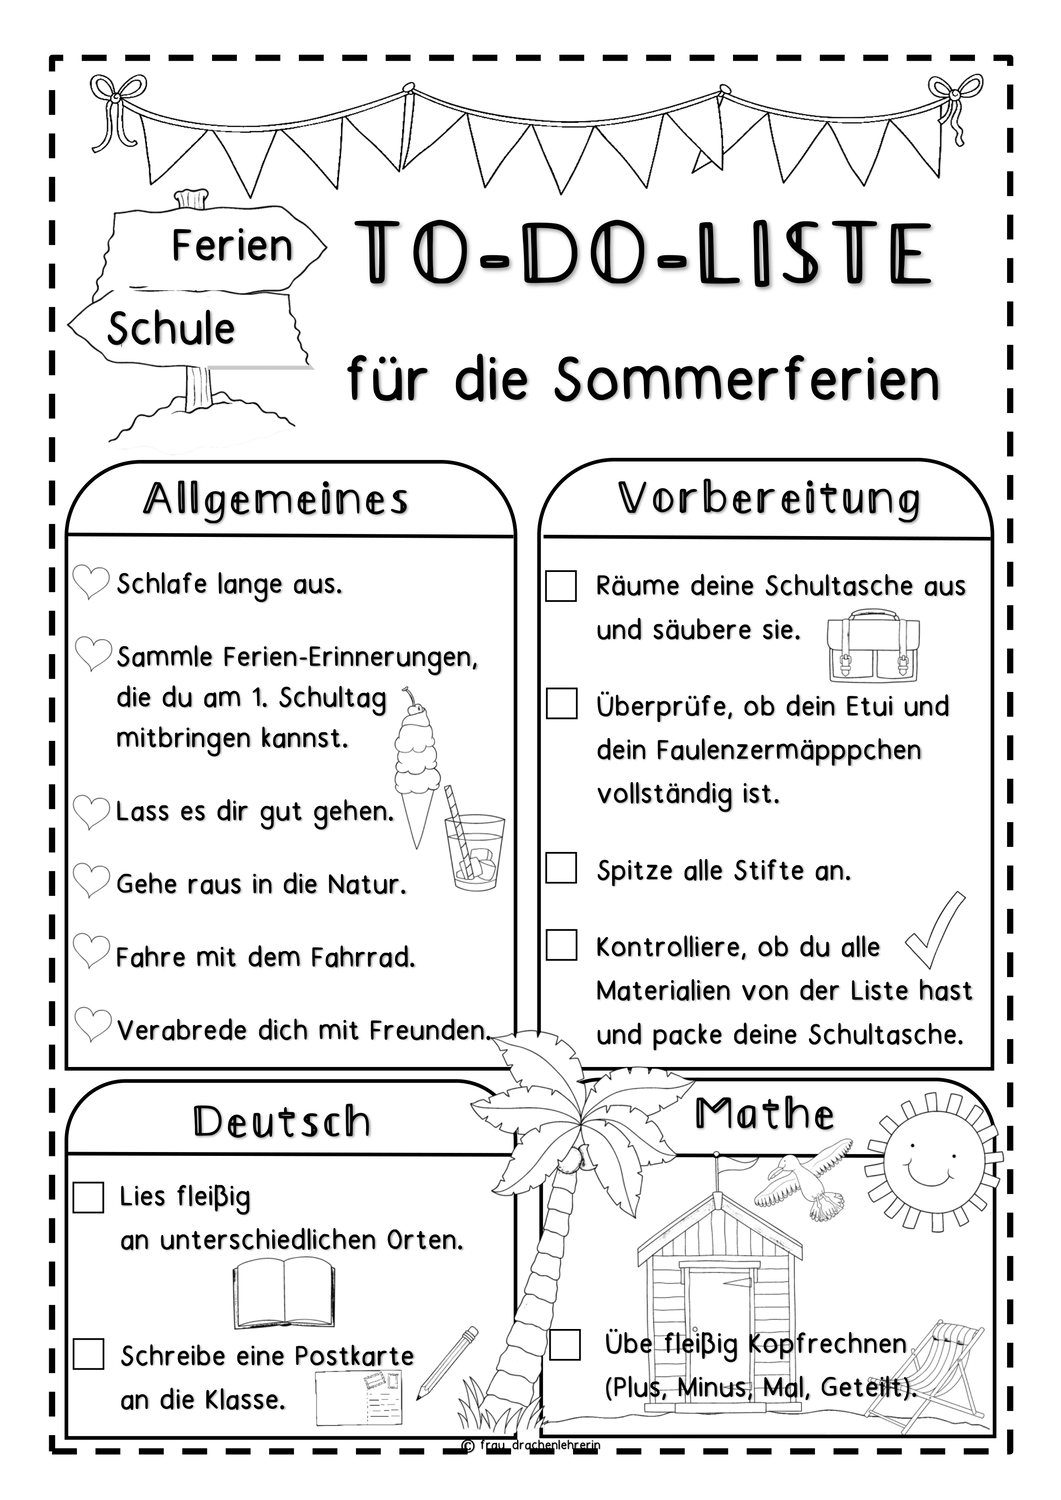 To Do Liste Fur Die Sommerferien 2 Versionen Unterrichtsmaterial In Den Fachern Deutsch Mathematik Beruf Lehrer Lernen German Lernen Tipps Schule